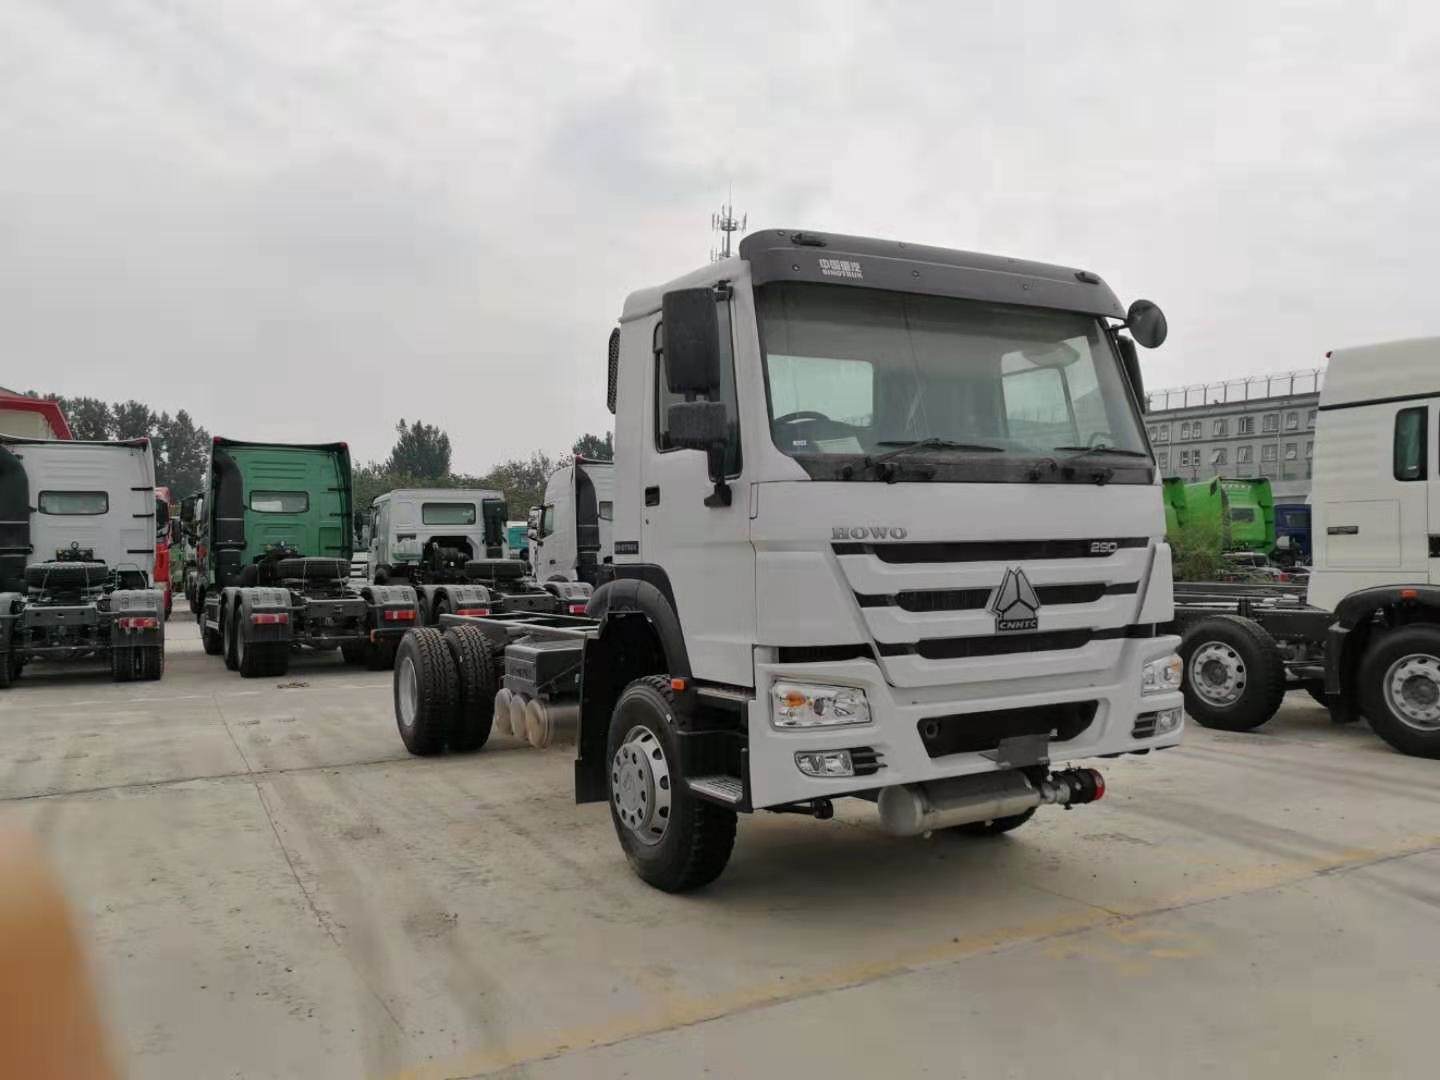 Vrachtwagen van de Kleuren4x2 Euro Zware Lading 2 van HOWO de Witte met 290 HP Motor en ZF8118-Leiding